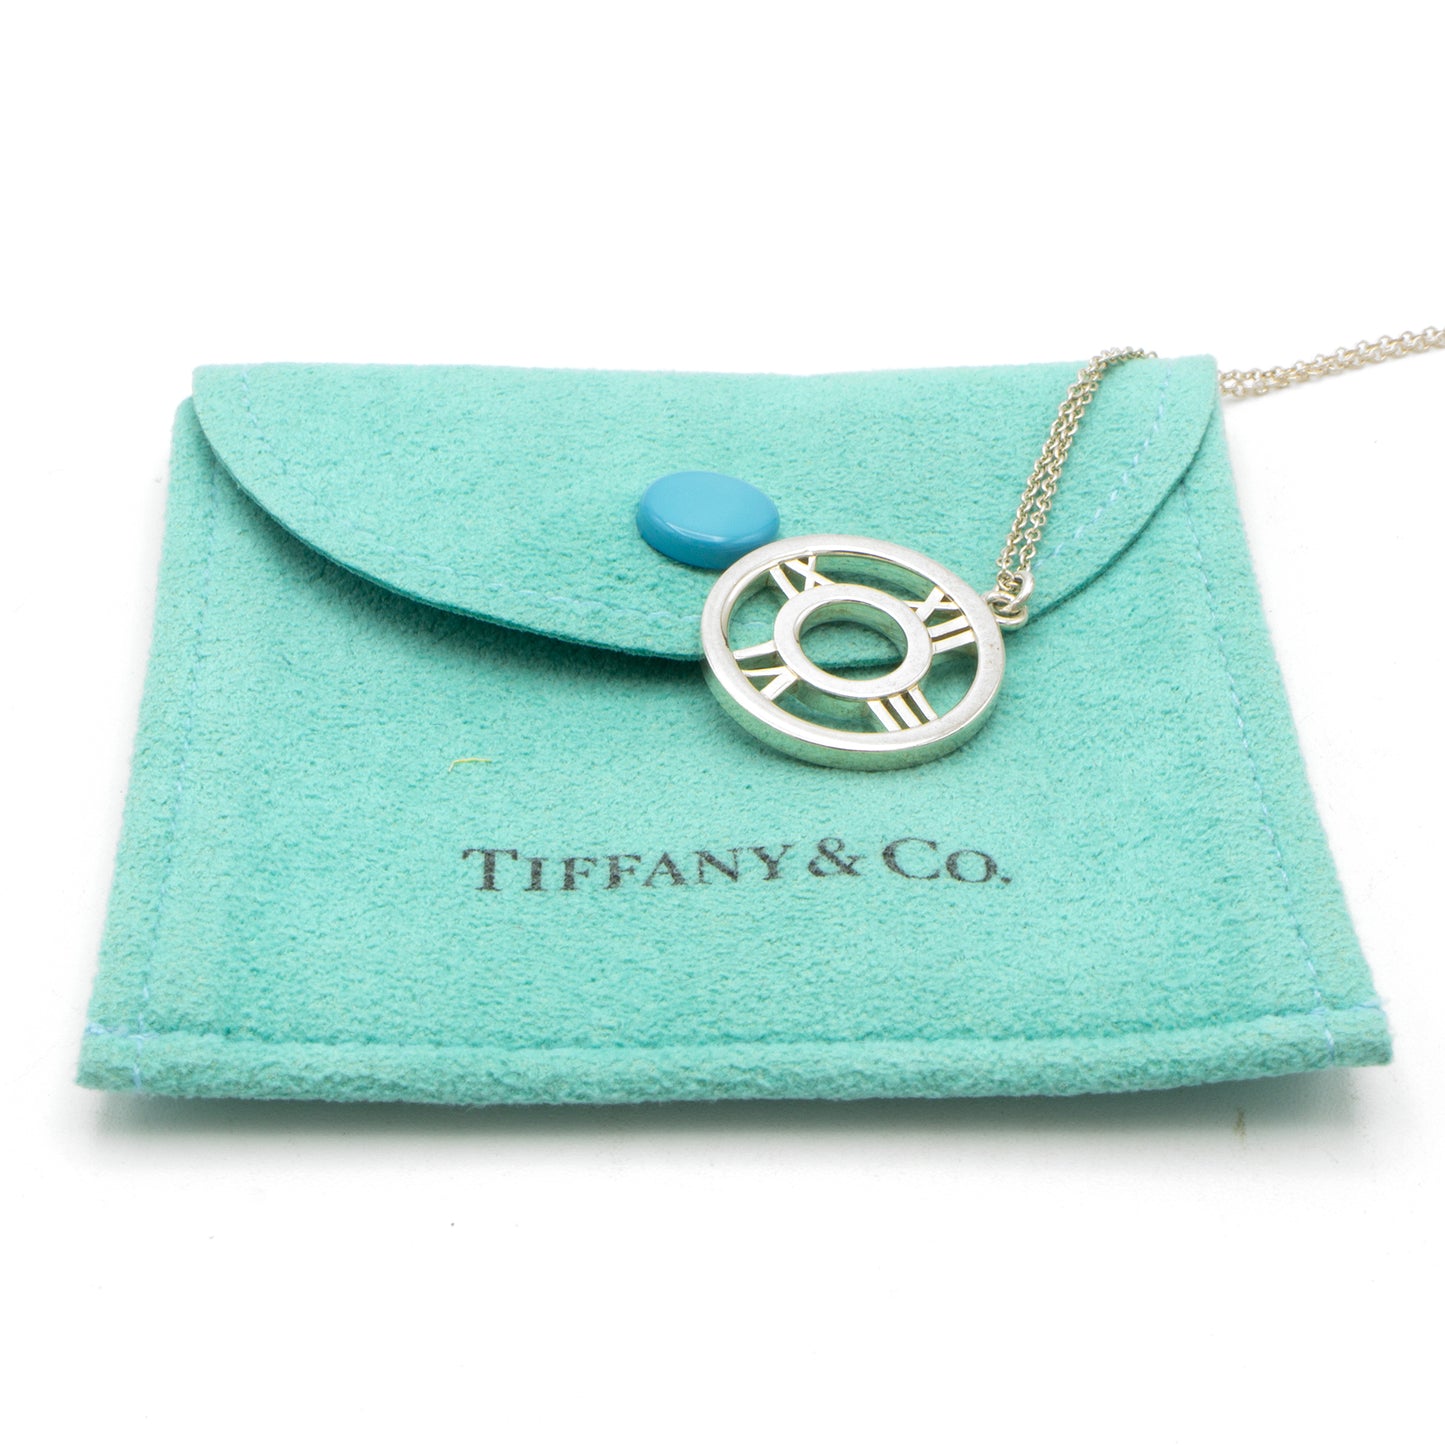 Tiffany & Co Atlas necklace